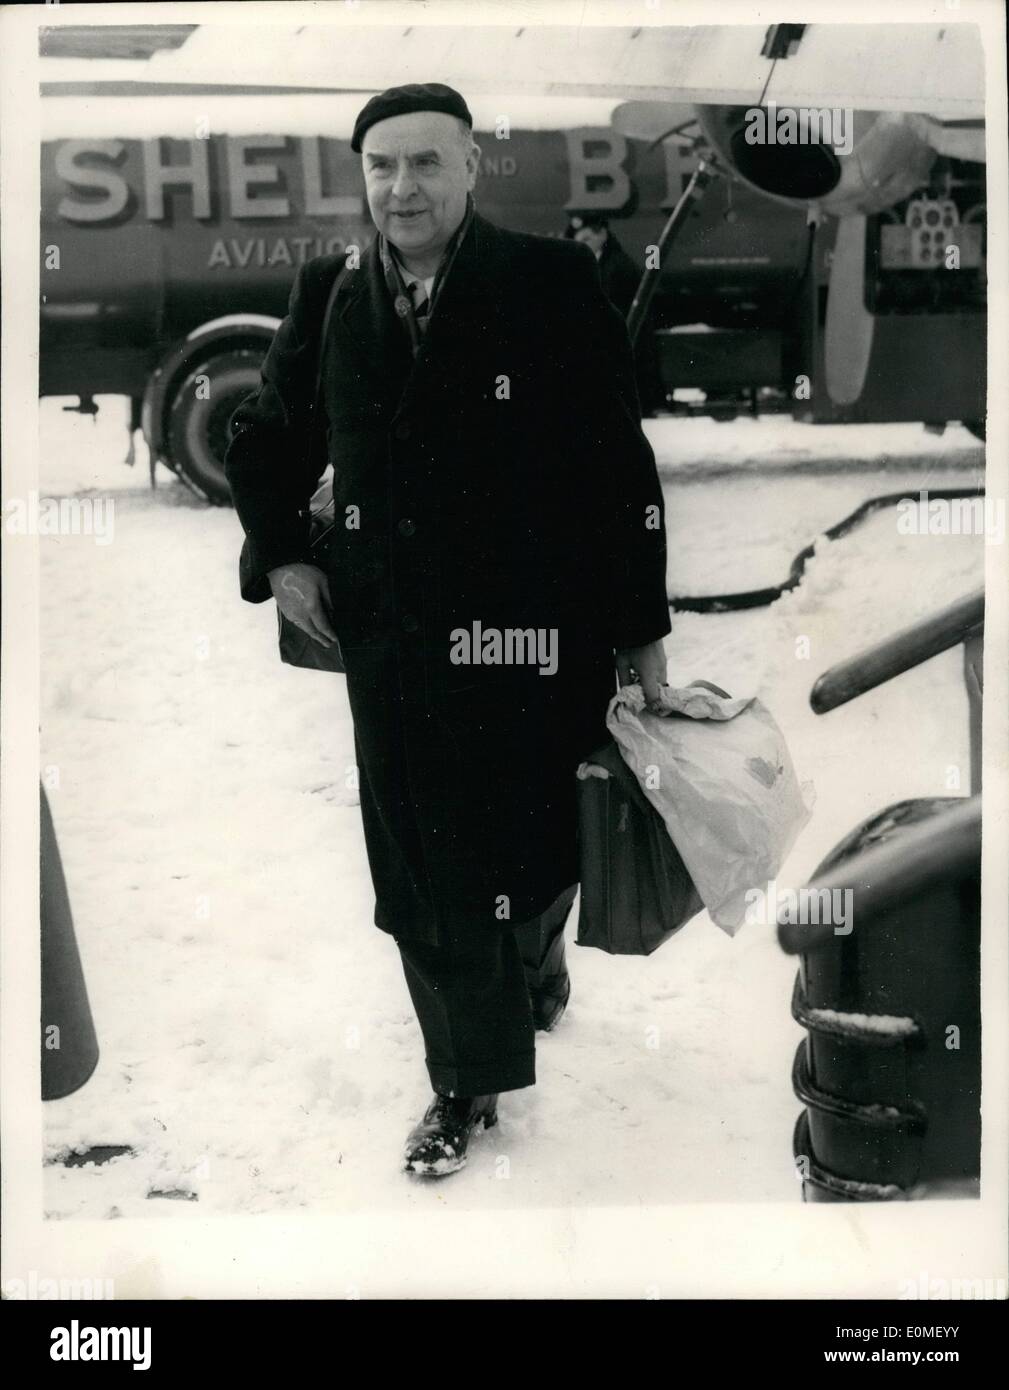 02 febbraio 1955 - ''New Fuhrer'' rifiuta il permesso di soggiorno a Londra. La strofa Placeed per Zurigo. Il dottor otto Stasser - l'uomo che Hitler ha esiliato - è stato messo in una cella di detenzione all'aeroporto di Londra quando è arrivato dal Canada questa mattina. poi ha messo all'estero un piano Swissair per Zurigo, visto che è stato rifiutato il permesso di rimanere dall'ufficio della casa in Germania - Stasser si dice spera di formare un revival nazionalista. Stesser ha lasciato la Germania 22 anni fa - durante il fuoco echatag. Si era rotto dai nazisti al fronte nero ''nazionalista bolscayik'' Foto Stock